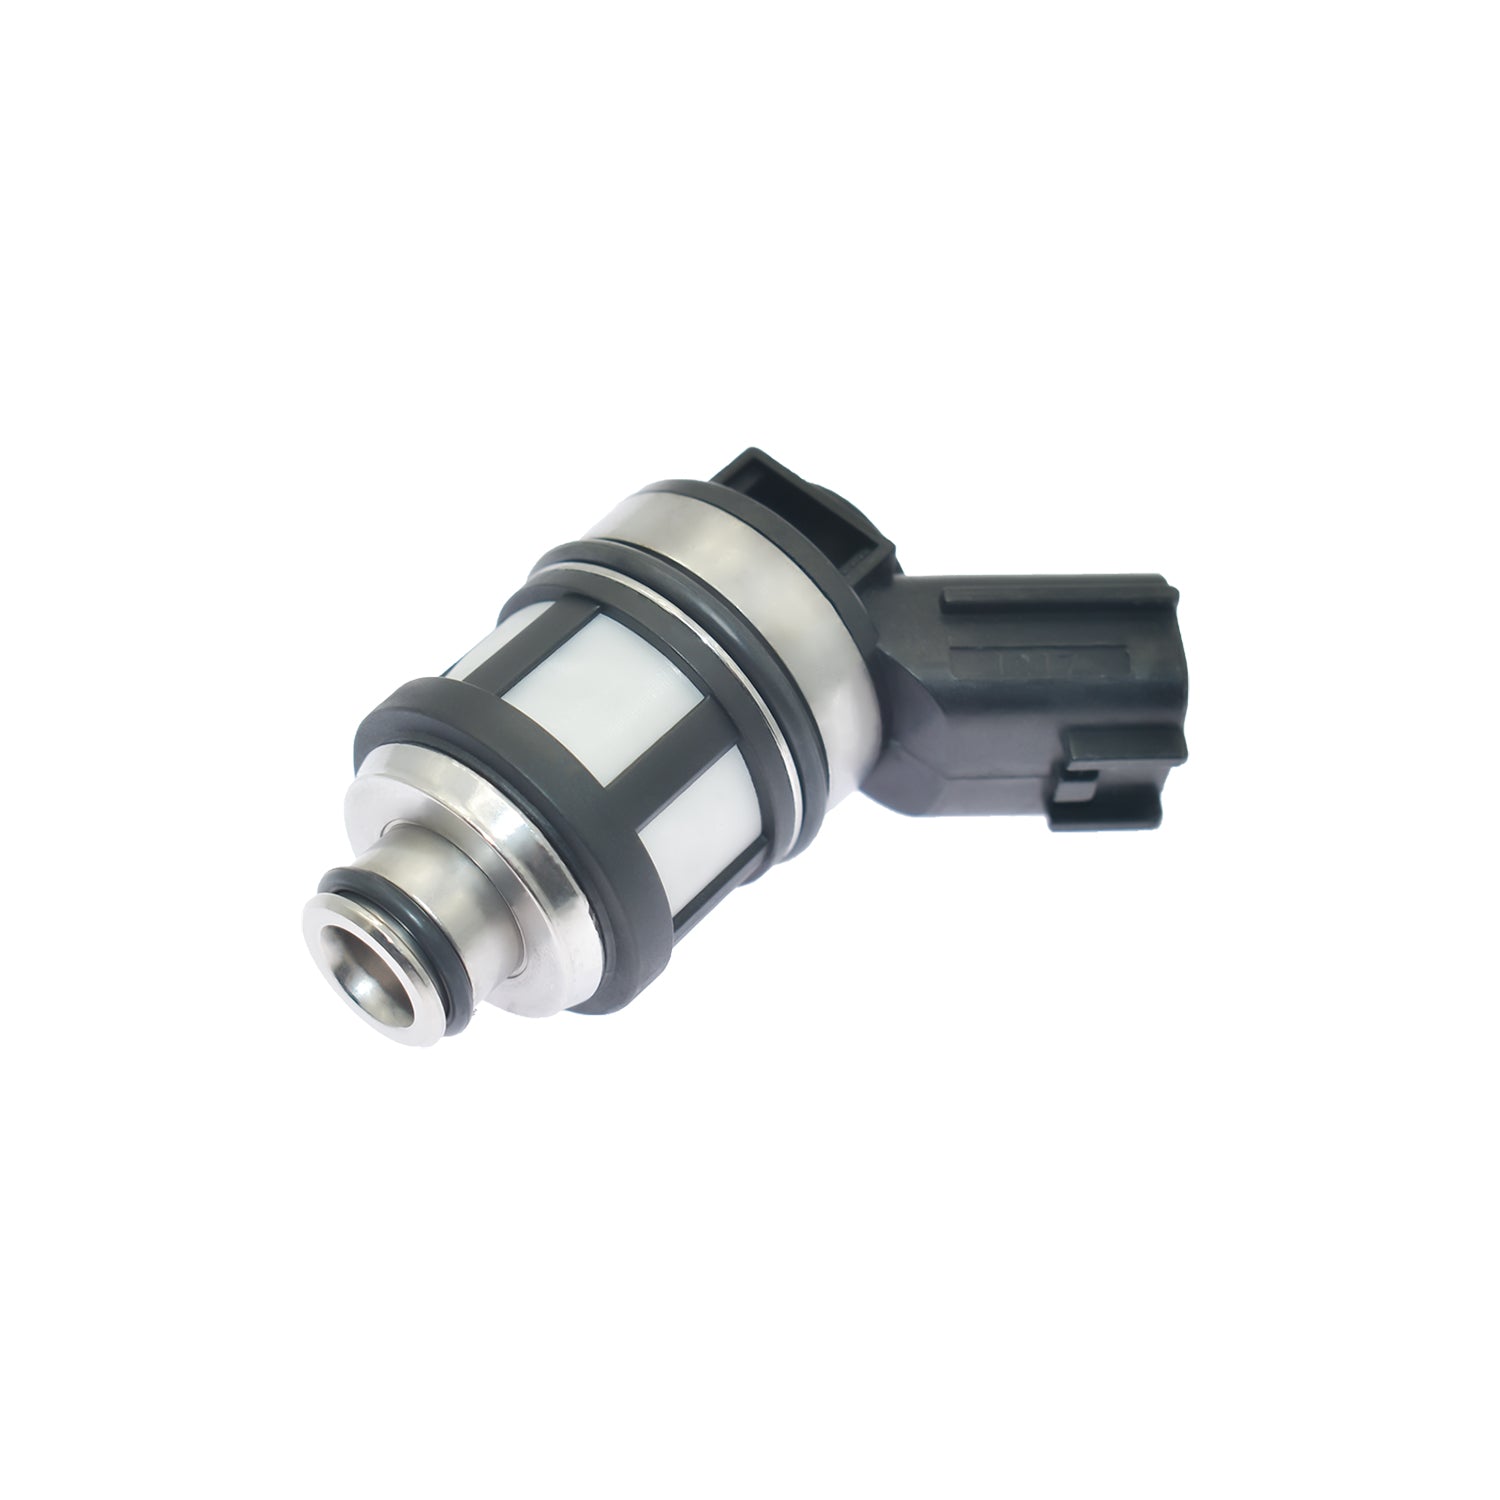 ZNTS 6Pcs Fuel Injectors Nozzle For Nissan Patrol 4.5L 1997-2001 16600-38Y10 JS23-1 97766121